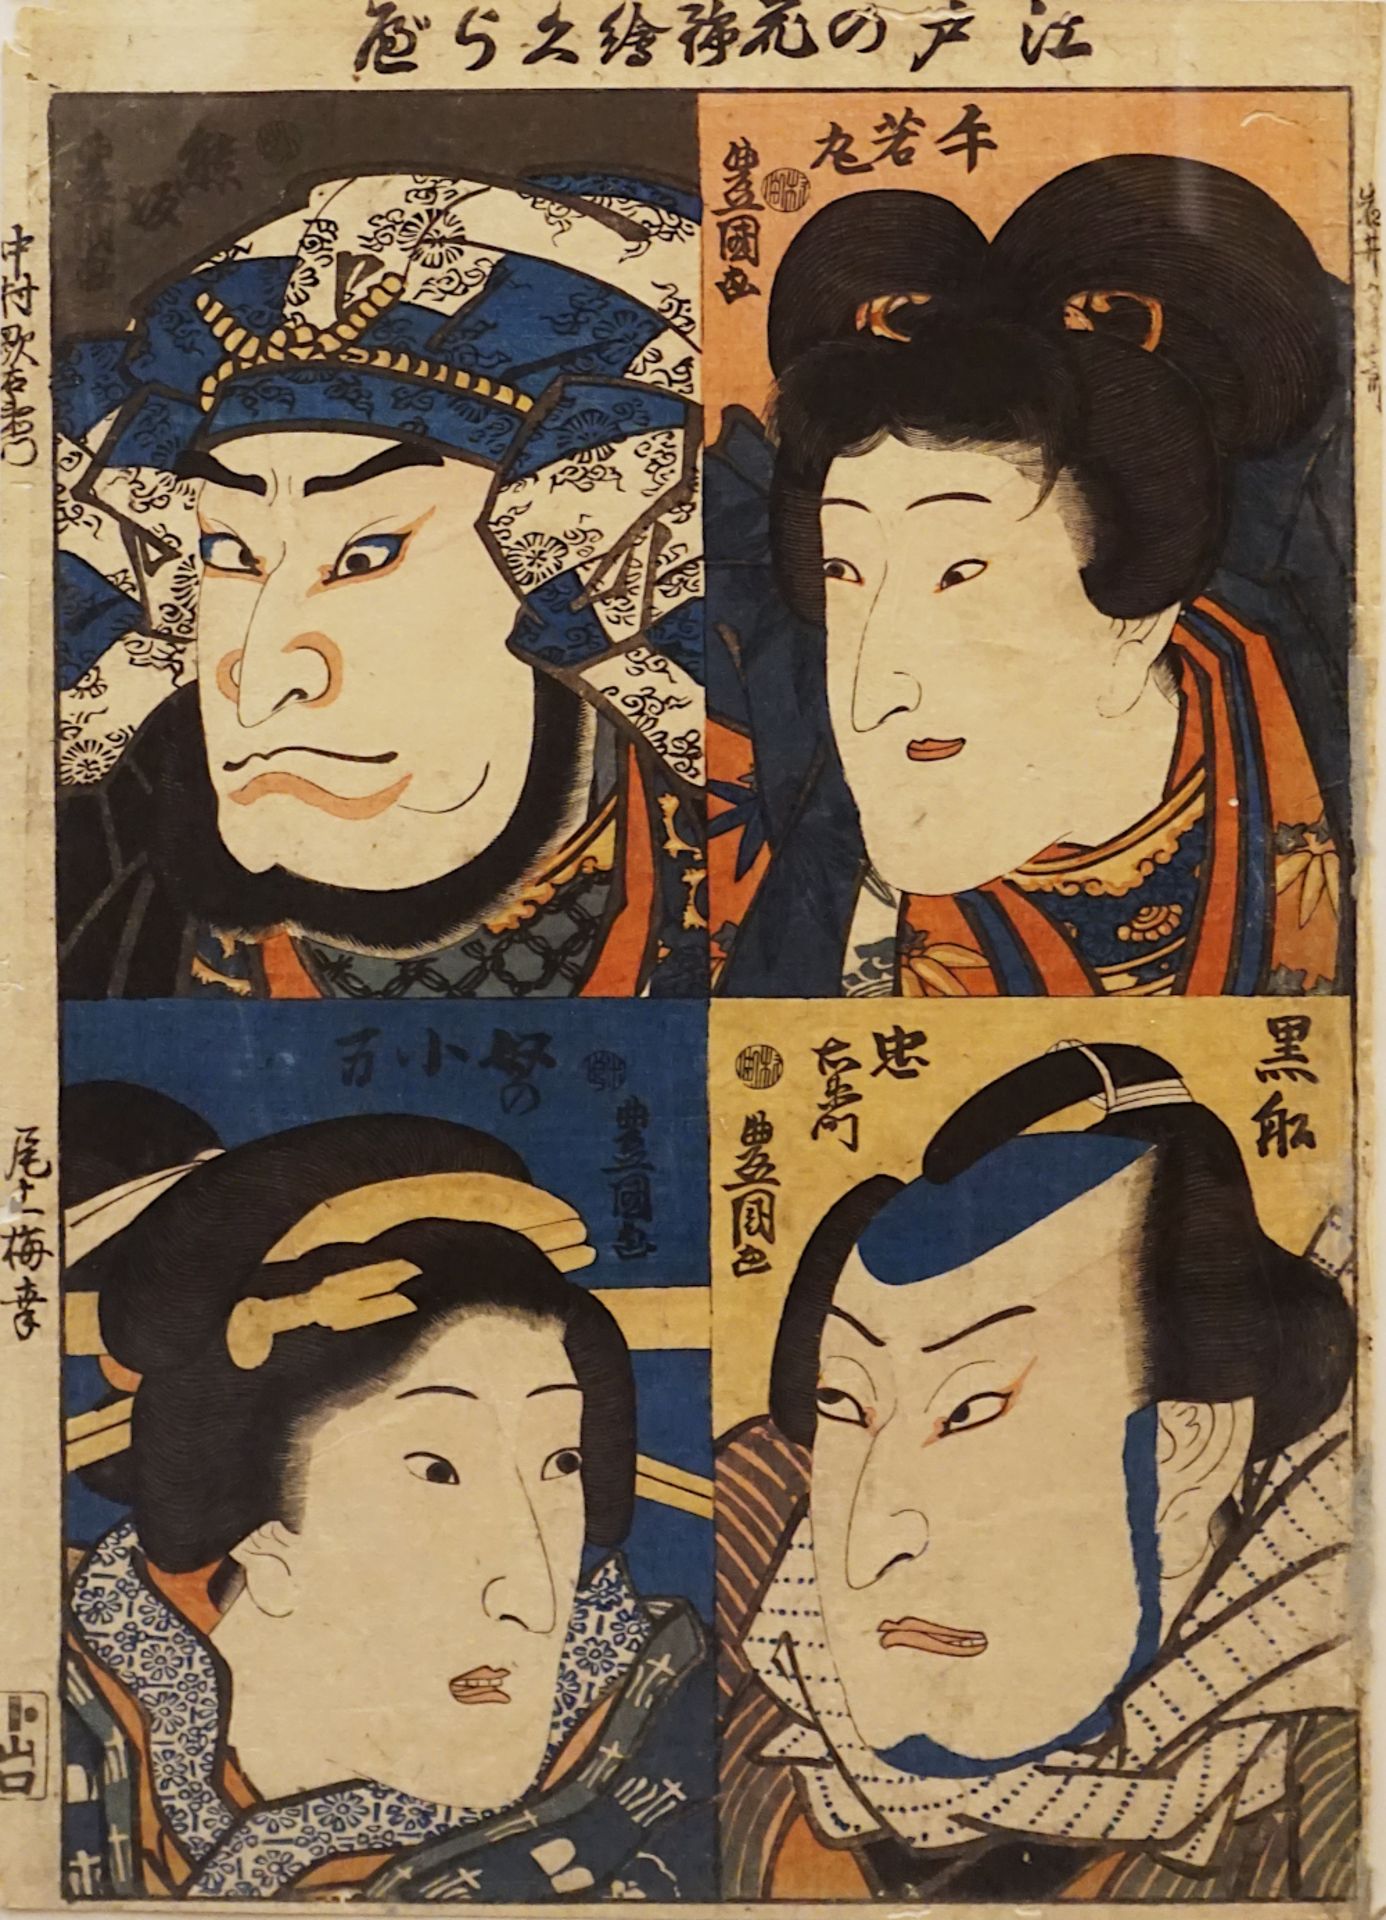 1 Farbholzschnitt "Vier Portraits von berühmten Kabuki-Charakteren des Edo" im Bild bez. Kunisada/To